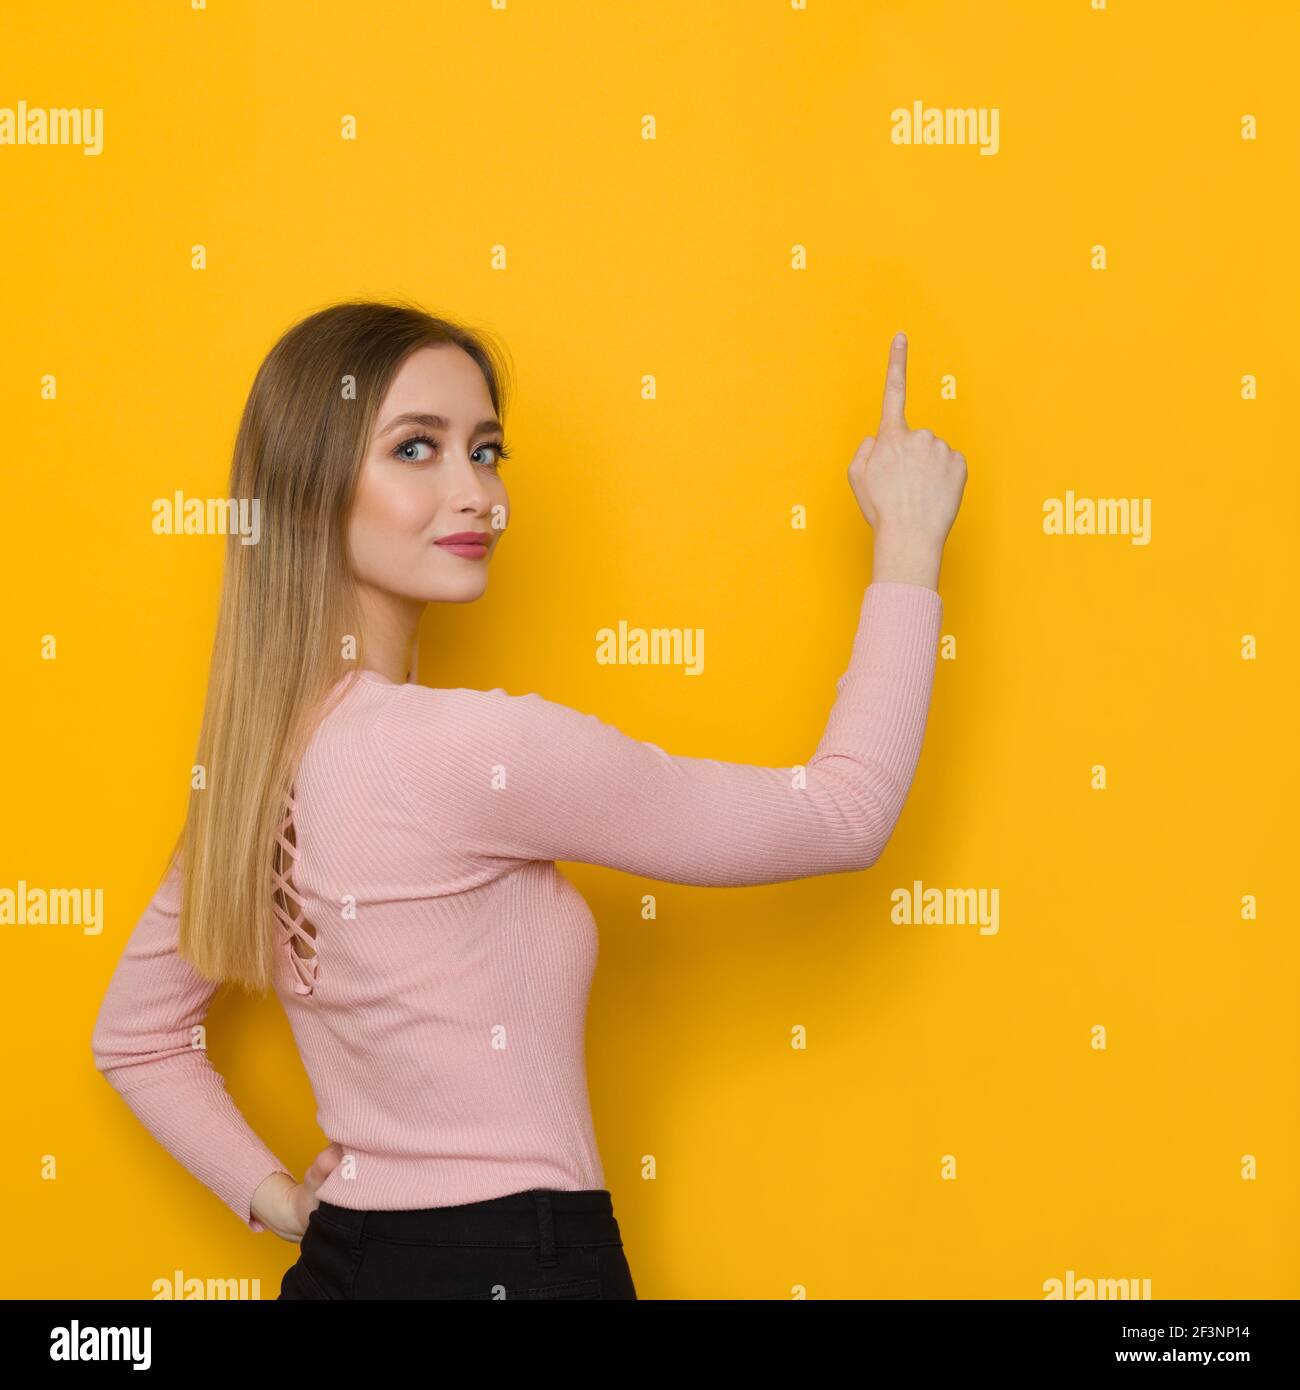 La jeune femme en chandail rose pointe vers le mur jaune et regarde l'appareil photo au-dessus de l'épaule. Vue arrière. Prise de vue en studio à taille haute. Banque D'Images